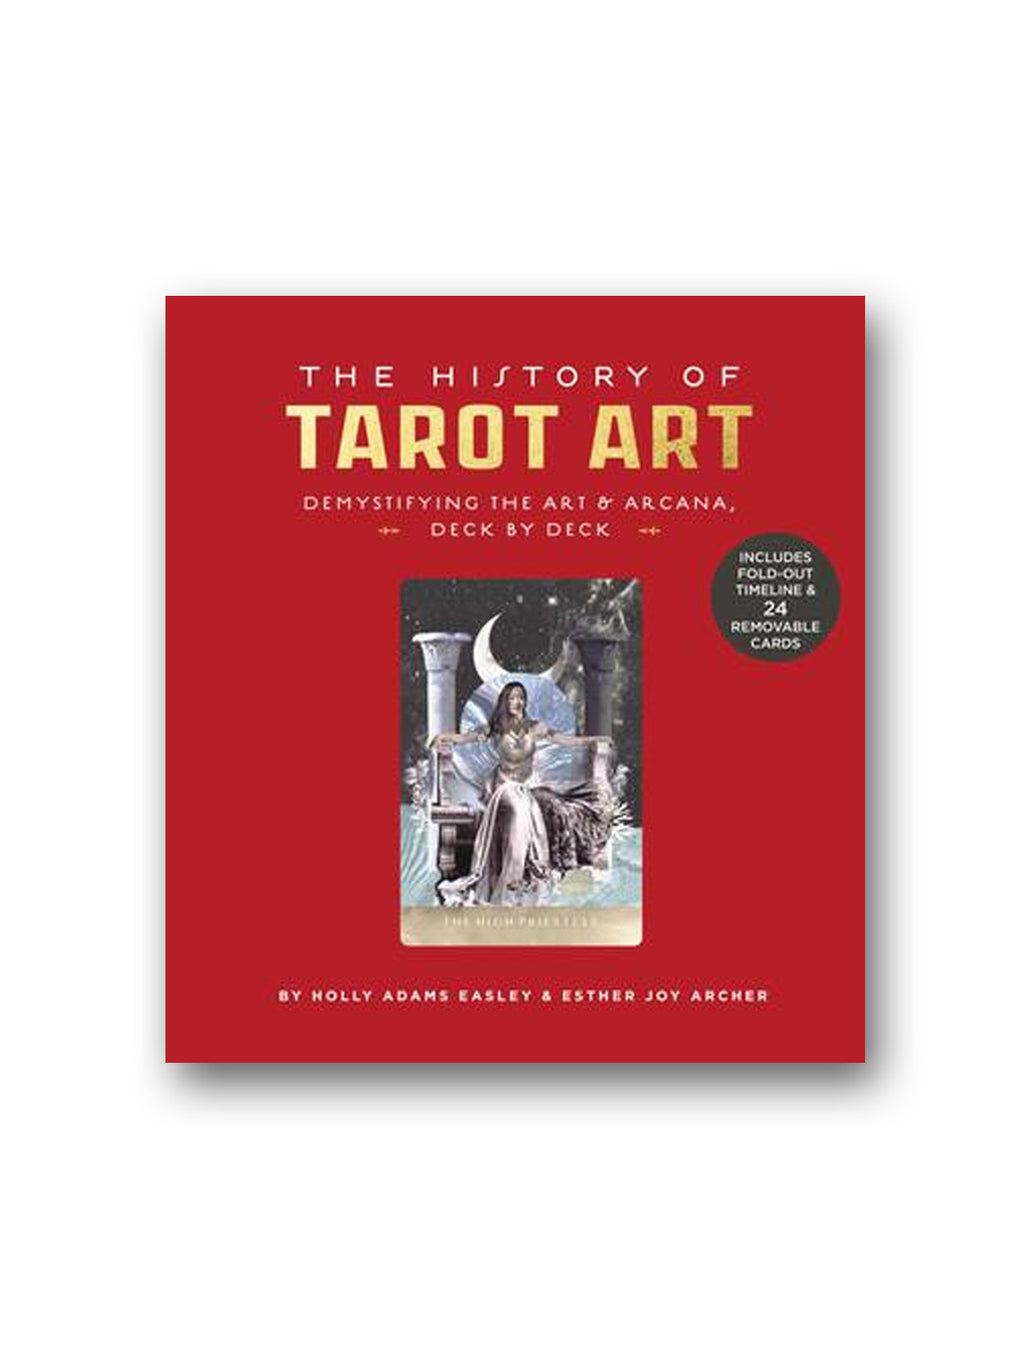 The History of Tarot Art